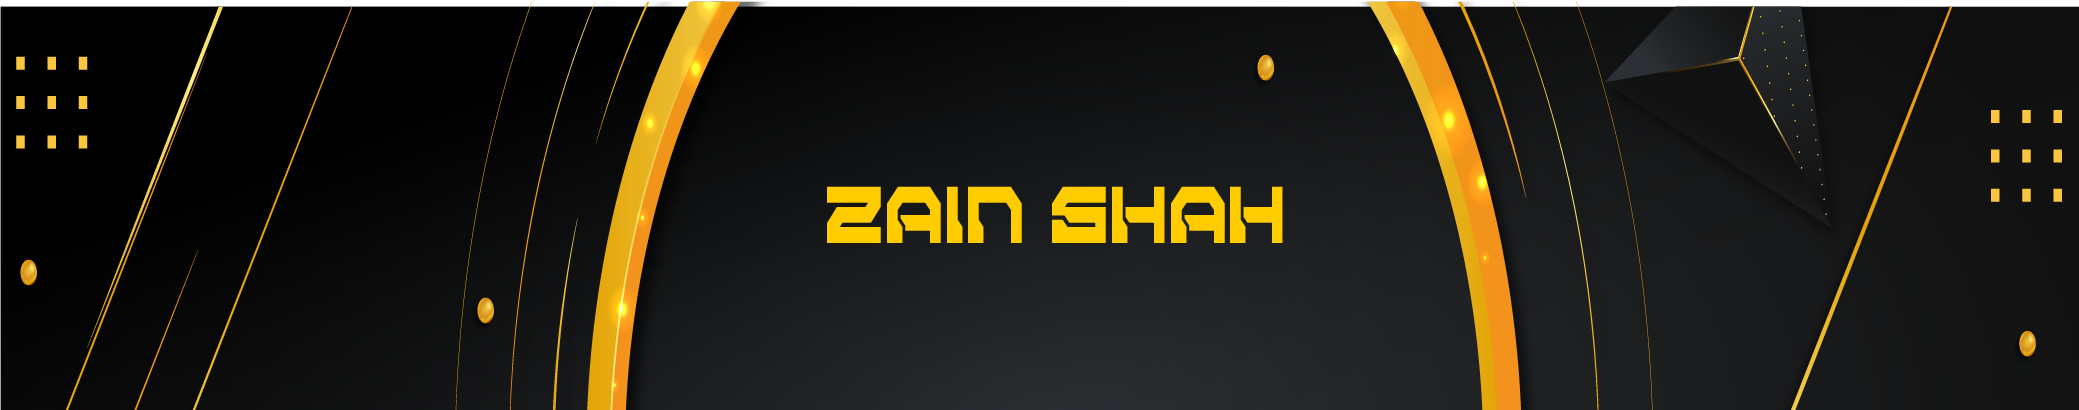 Zain Shah's profile banner